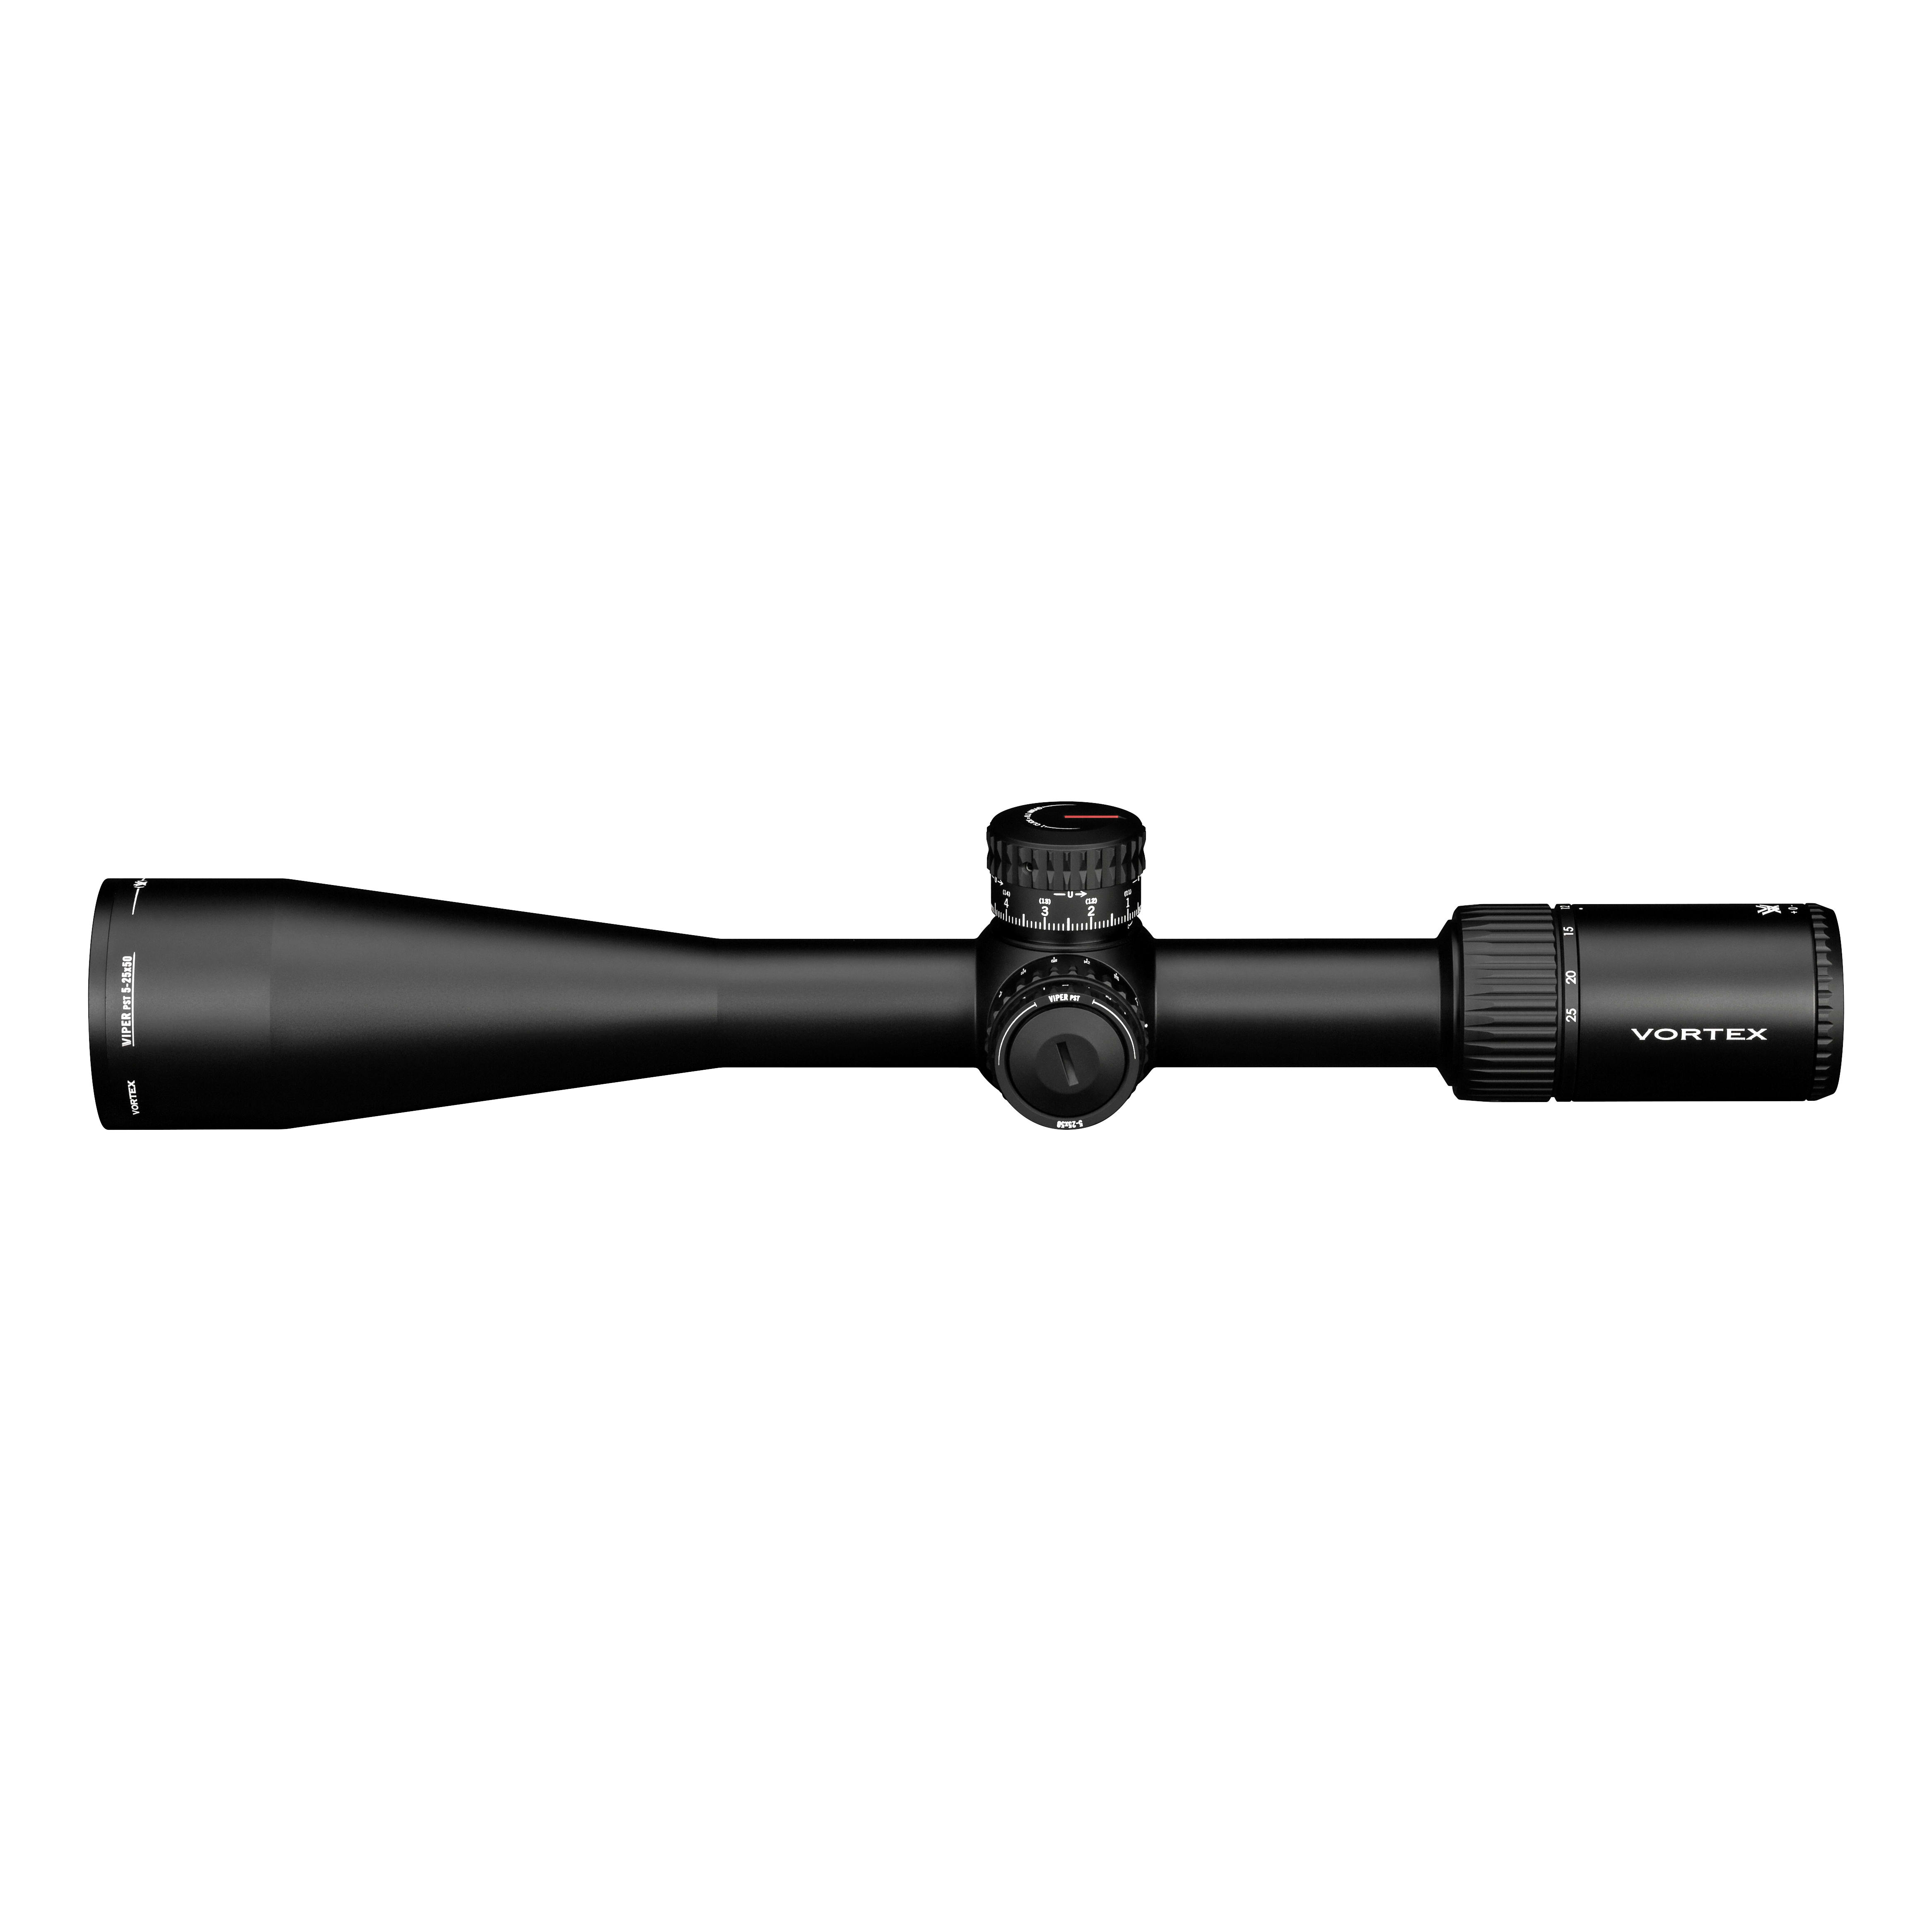 Vortex® Viper PST Gen II Riflescope - Side View